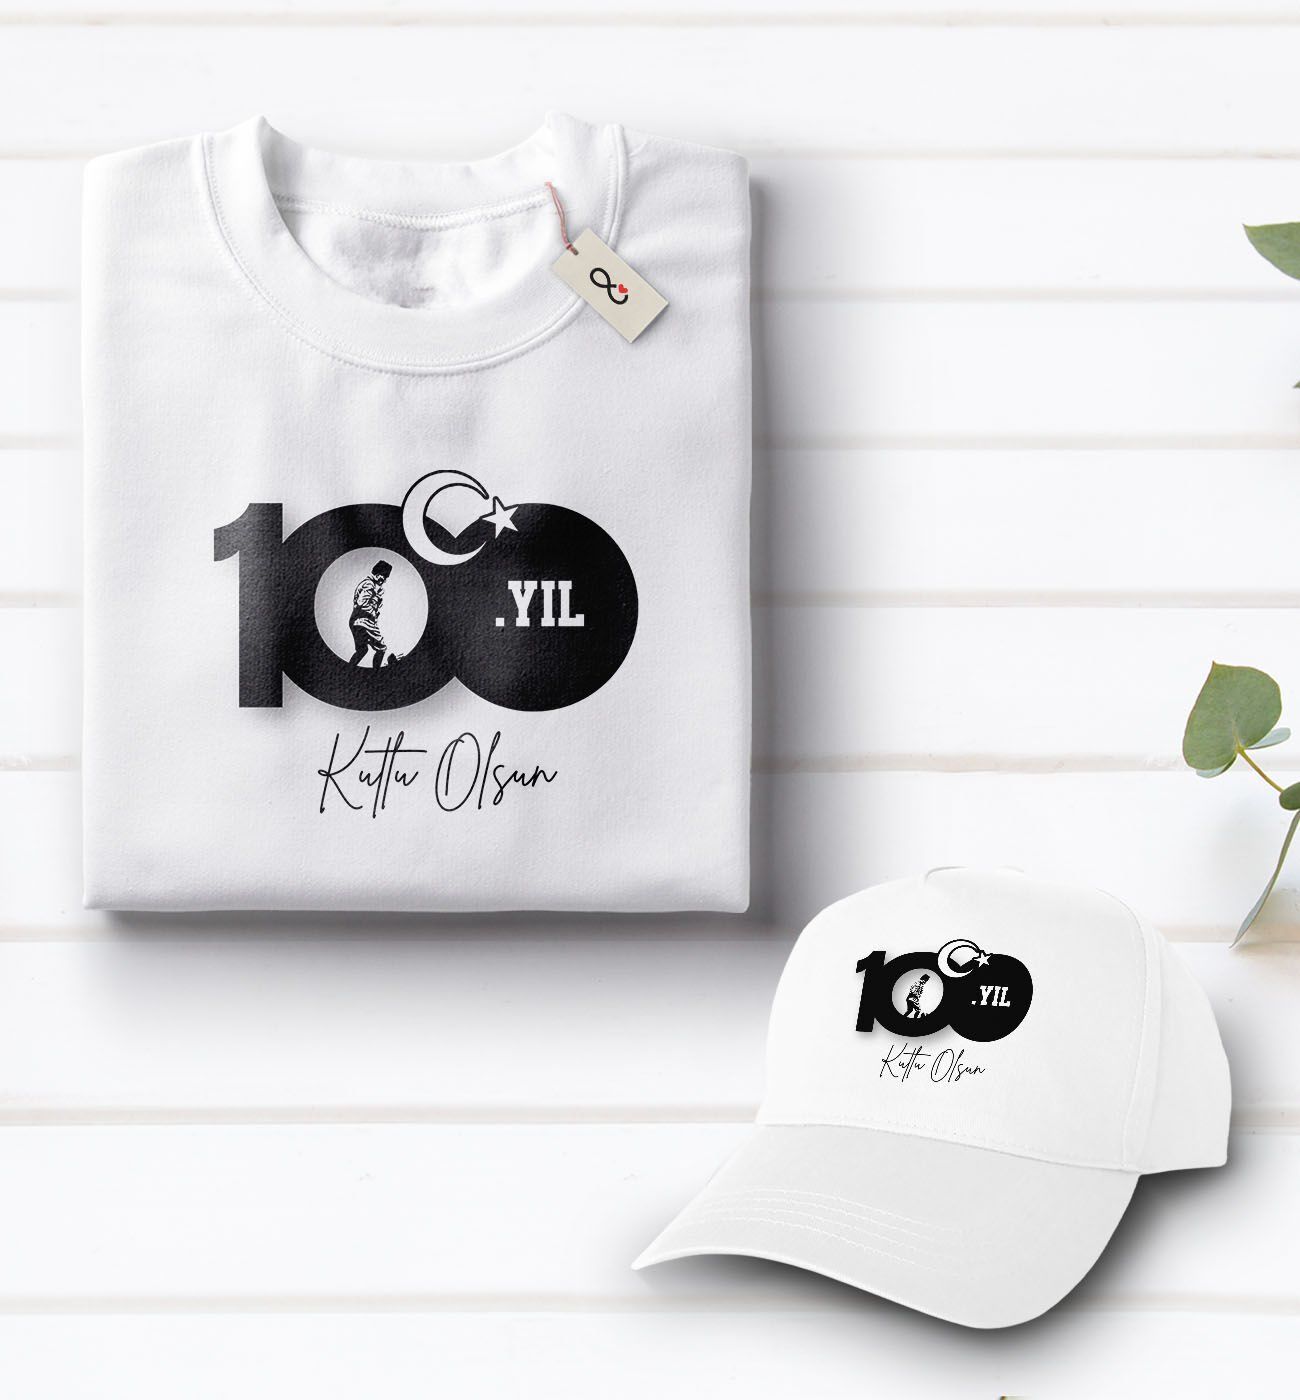 BK Gift 100. Yıl Hatırası Beyaz Tişört ve Şapka Hediye Seti-1, 29 Ekim Hediyesi, Cumhuriyet Bayramı, 100.Yıl Hediyesi